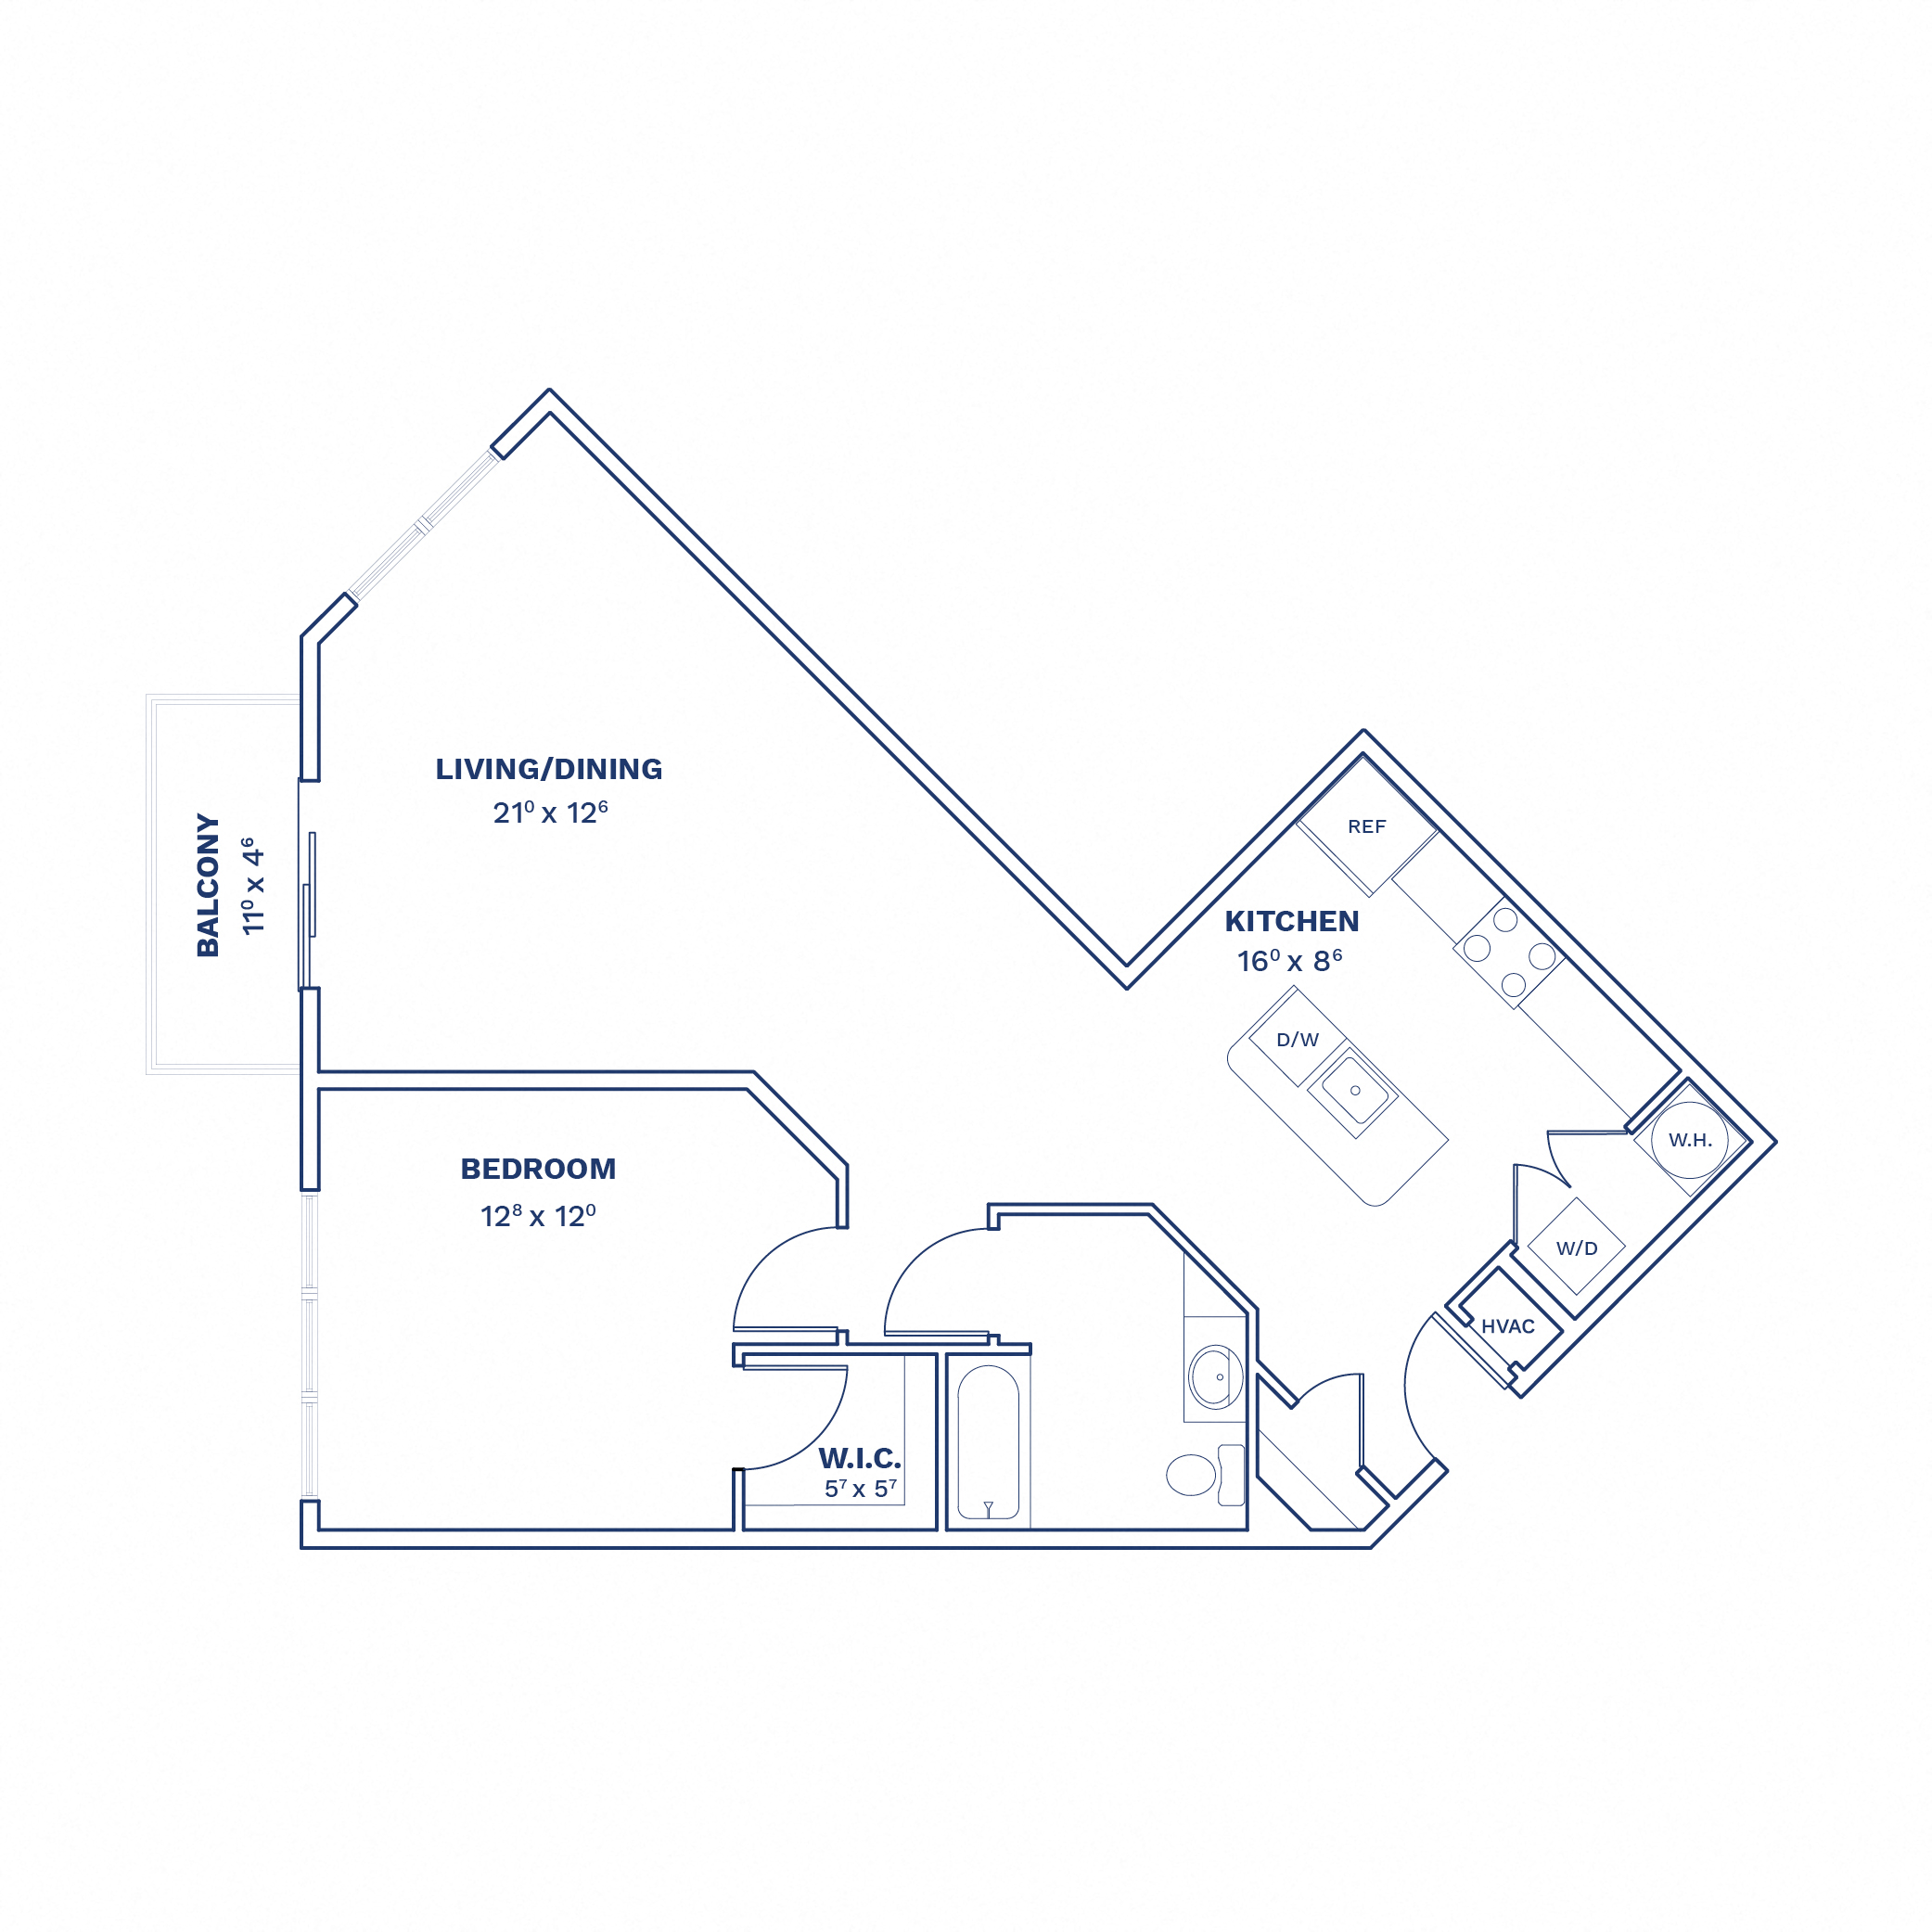 Floorplan of Unit 1 Bed/1 Bath-A6